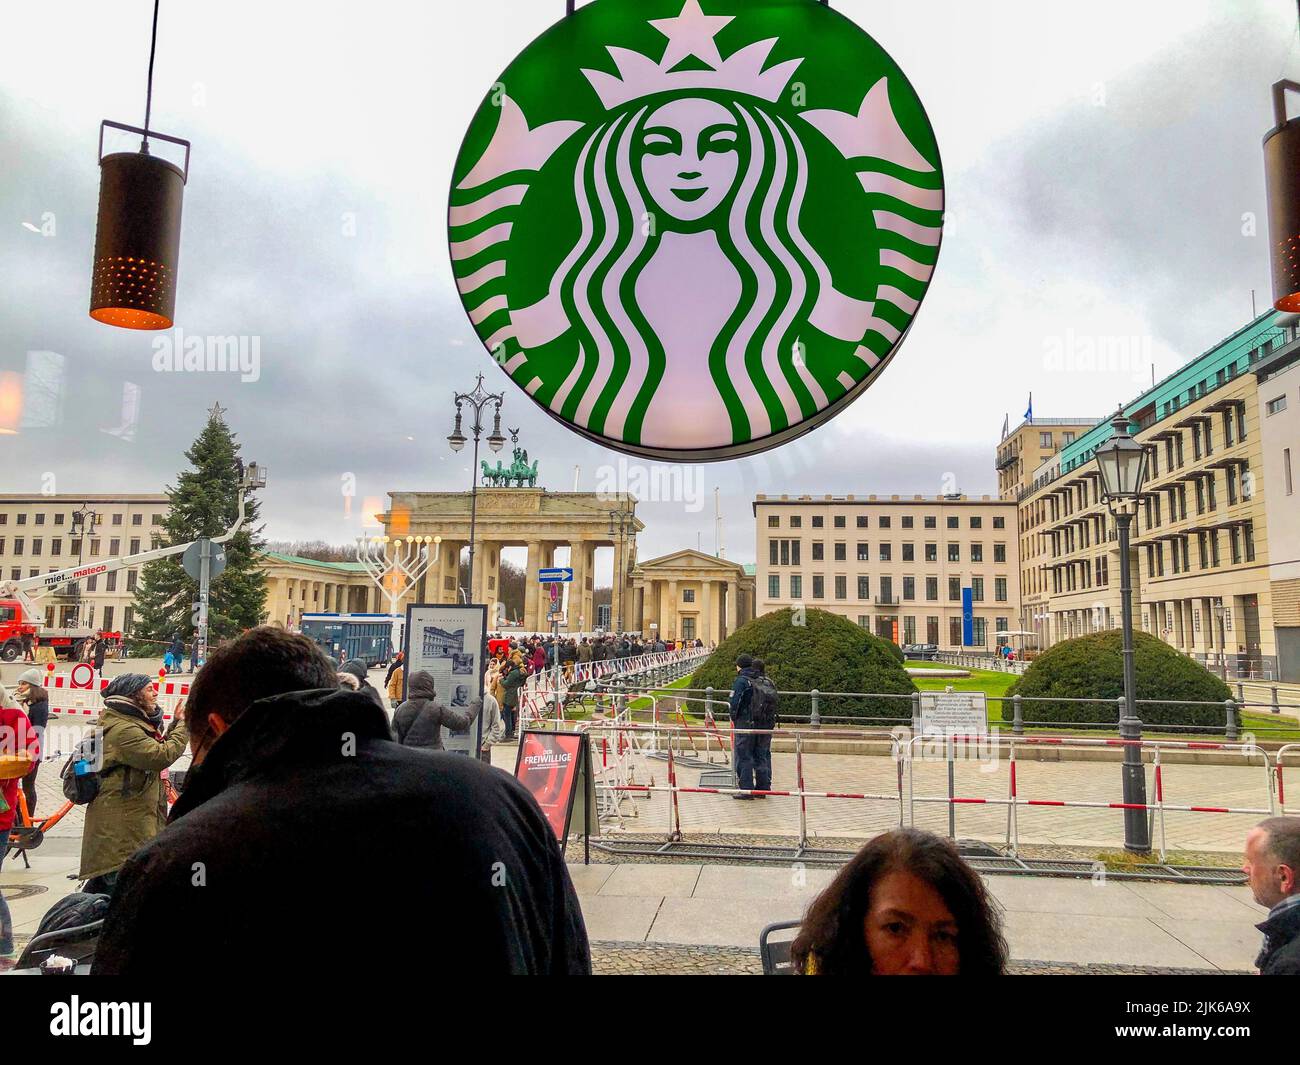 Berlín, Alemania, Vea la escena de la calle desde el interior del Café de Starbuck, cartel, logotipo, Pariser Platz, Porte de Brandenbourg Foto de stock